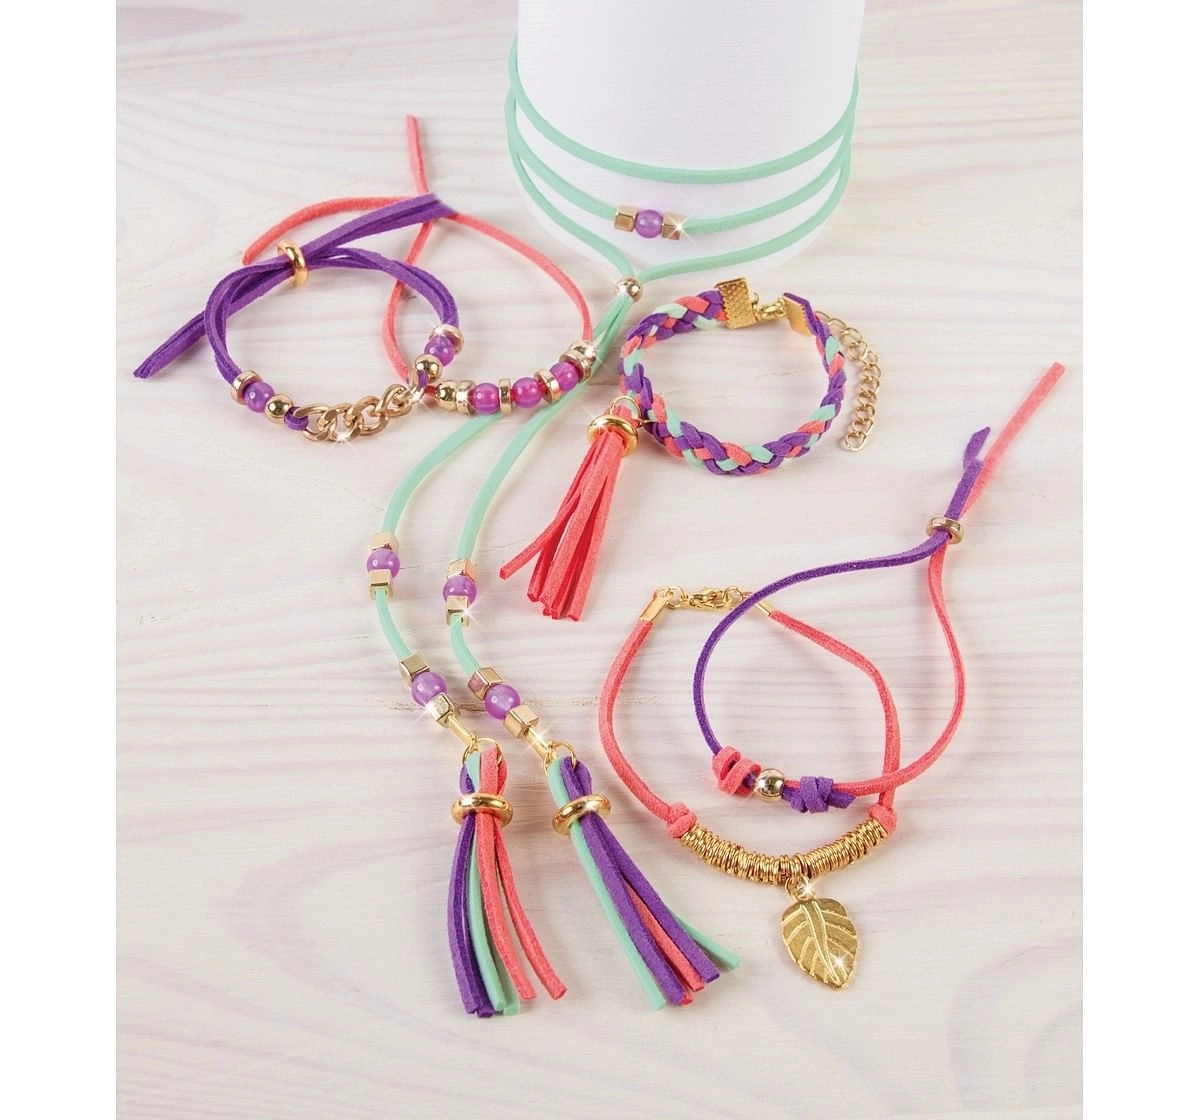 Make it Real Gold Link Suede Bracelets DIY kits Multicolor 8Y+